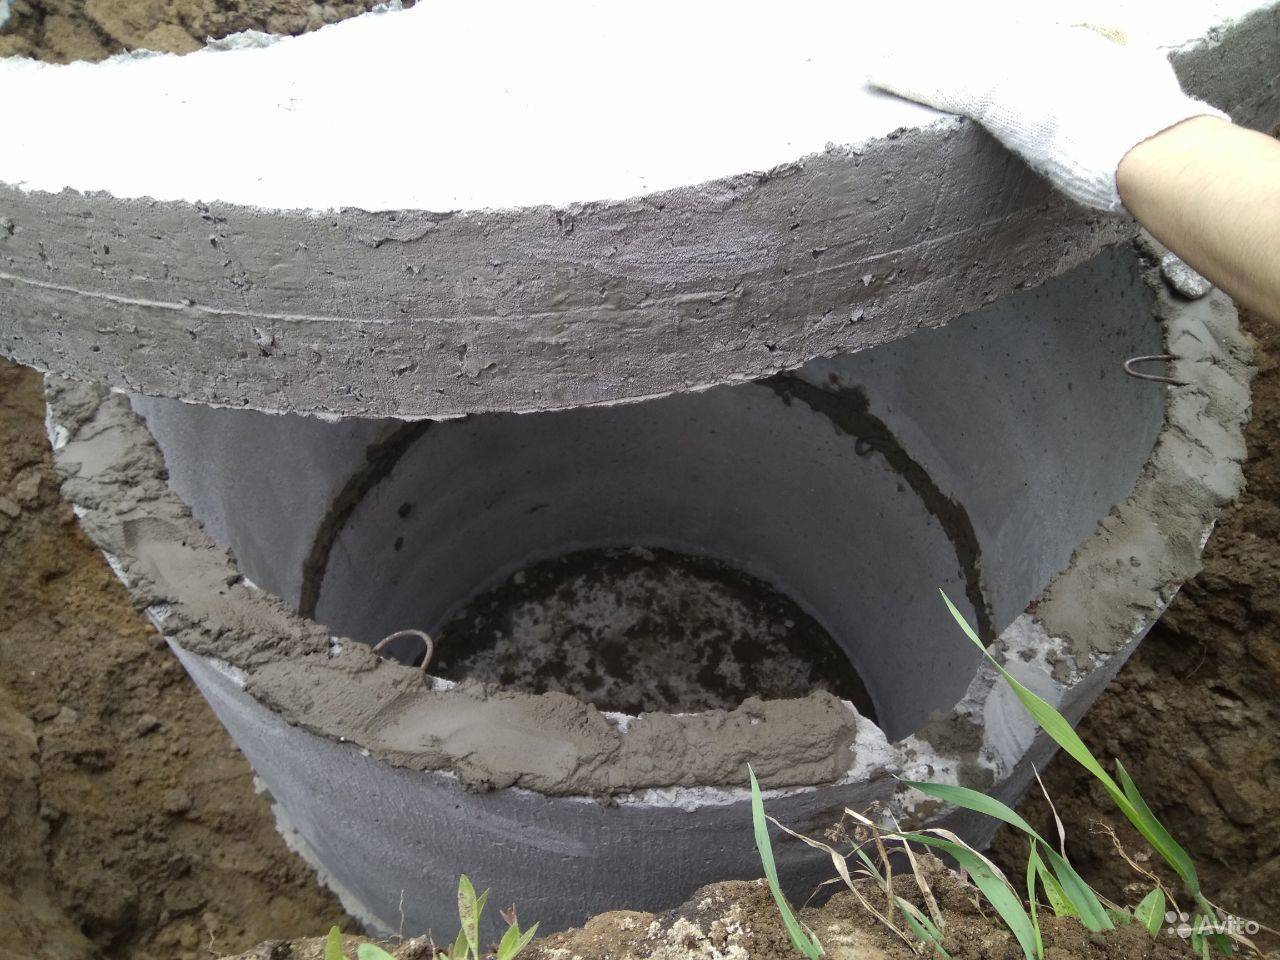 Канализация из бетонных колец для частного дома — инжи.ру